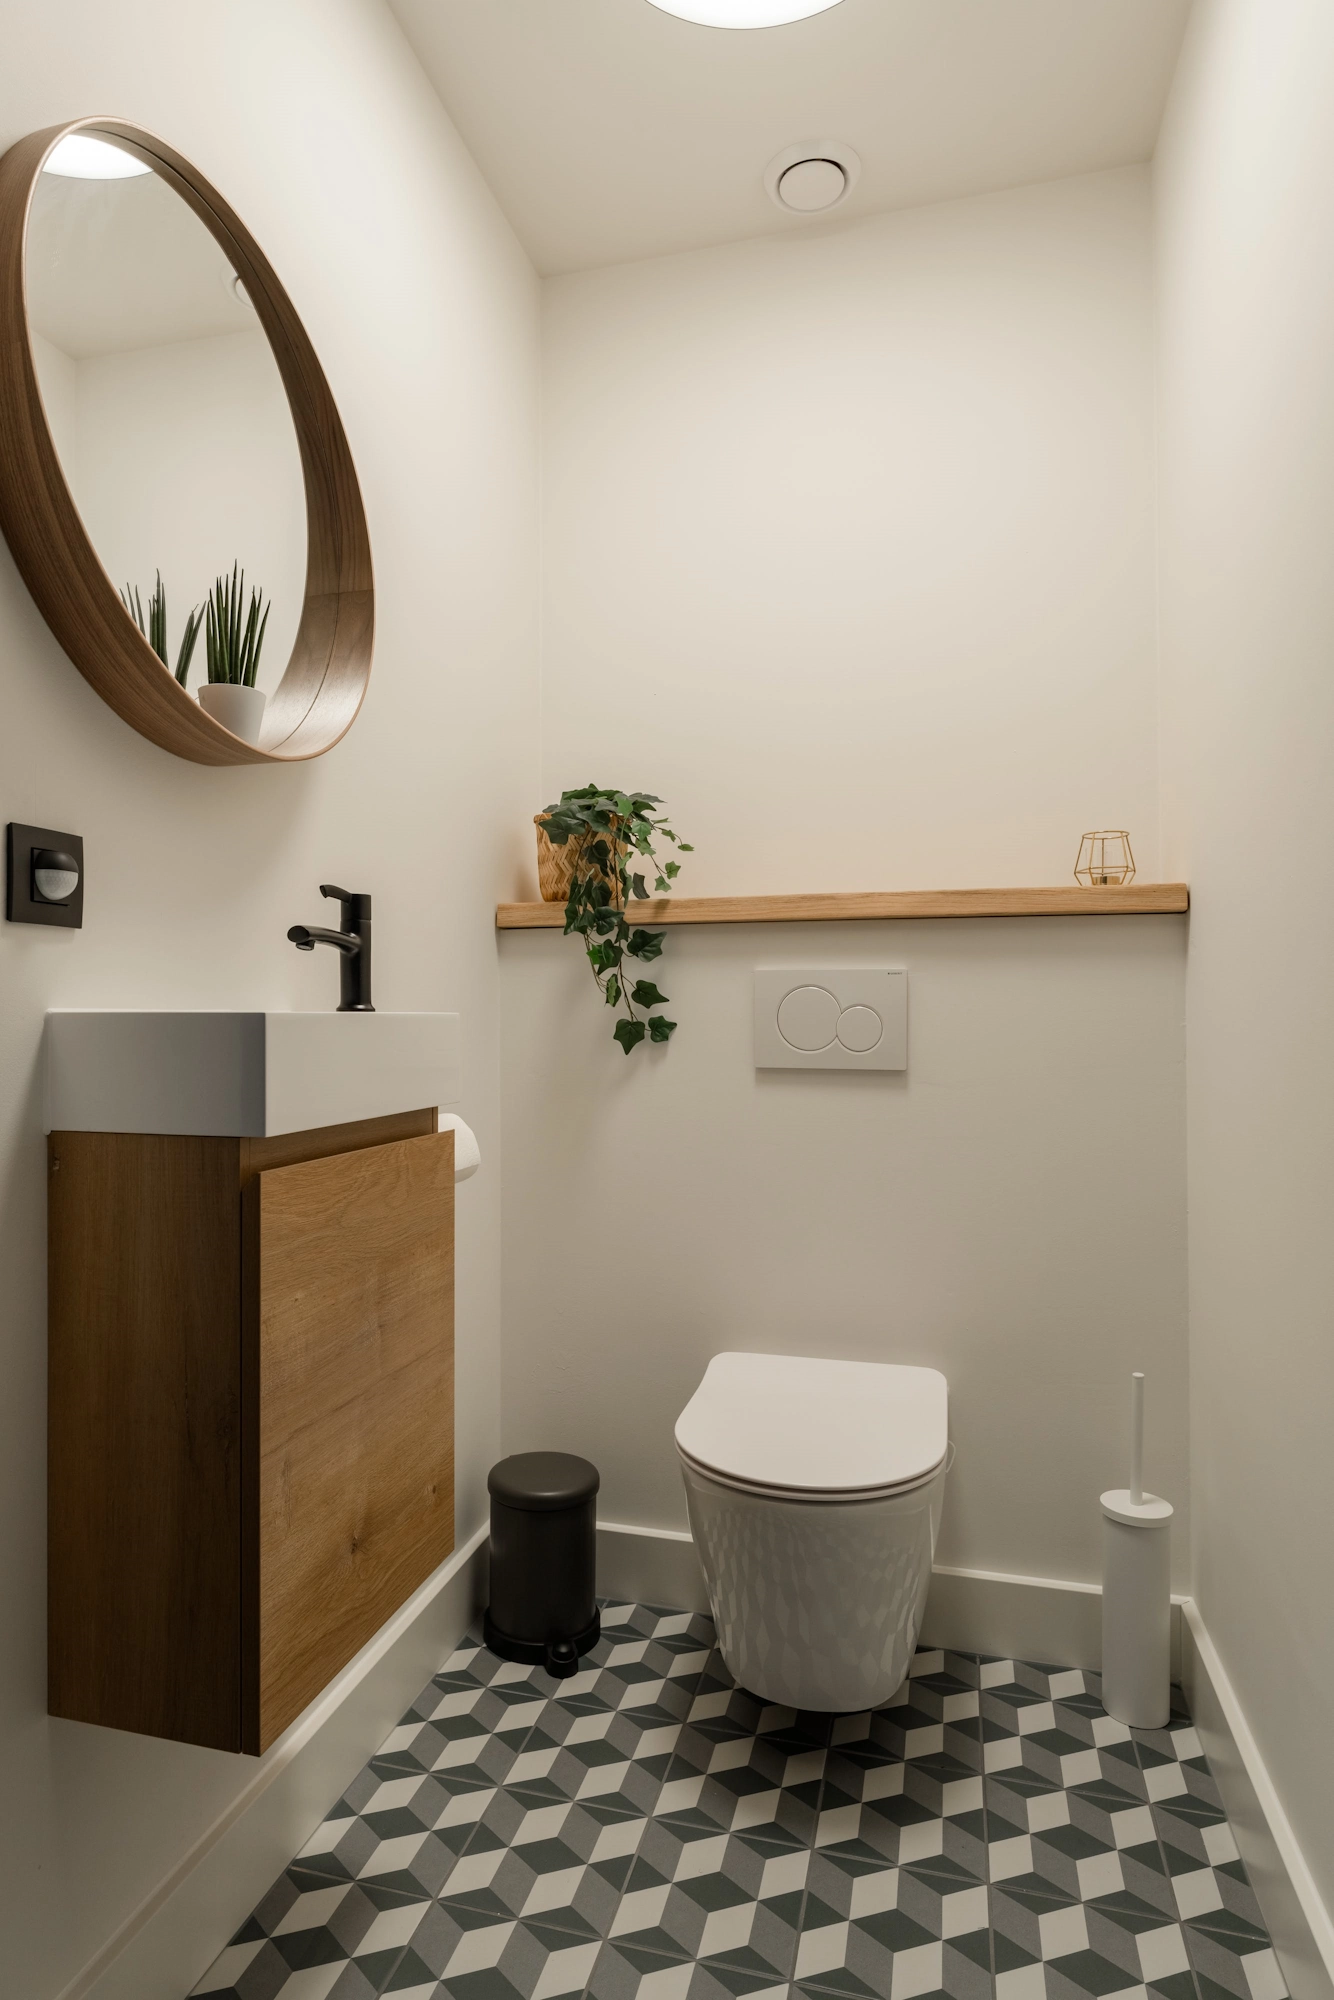 Un baño contemporáneo con un diseño minimalista.